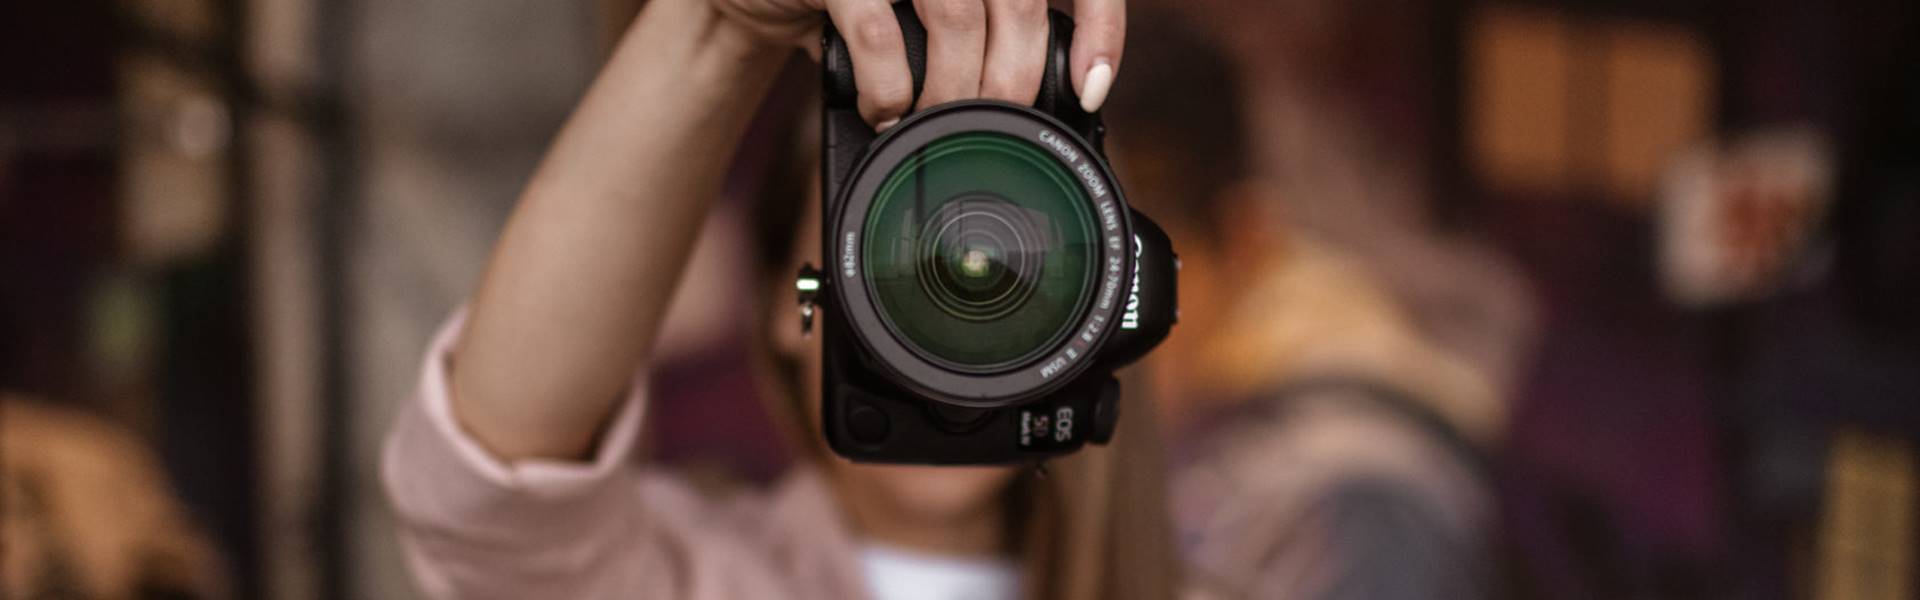 Как стать фотографом с нуля: инструкция и разбор ошибок